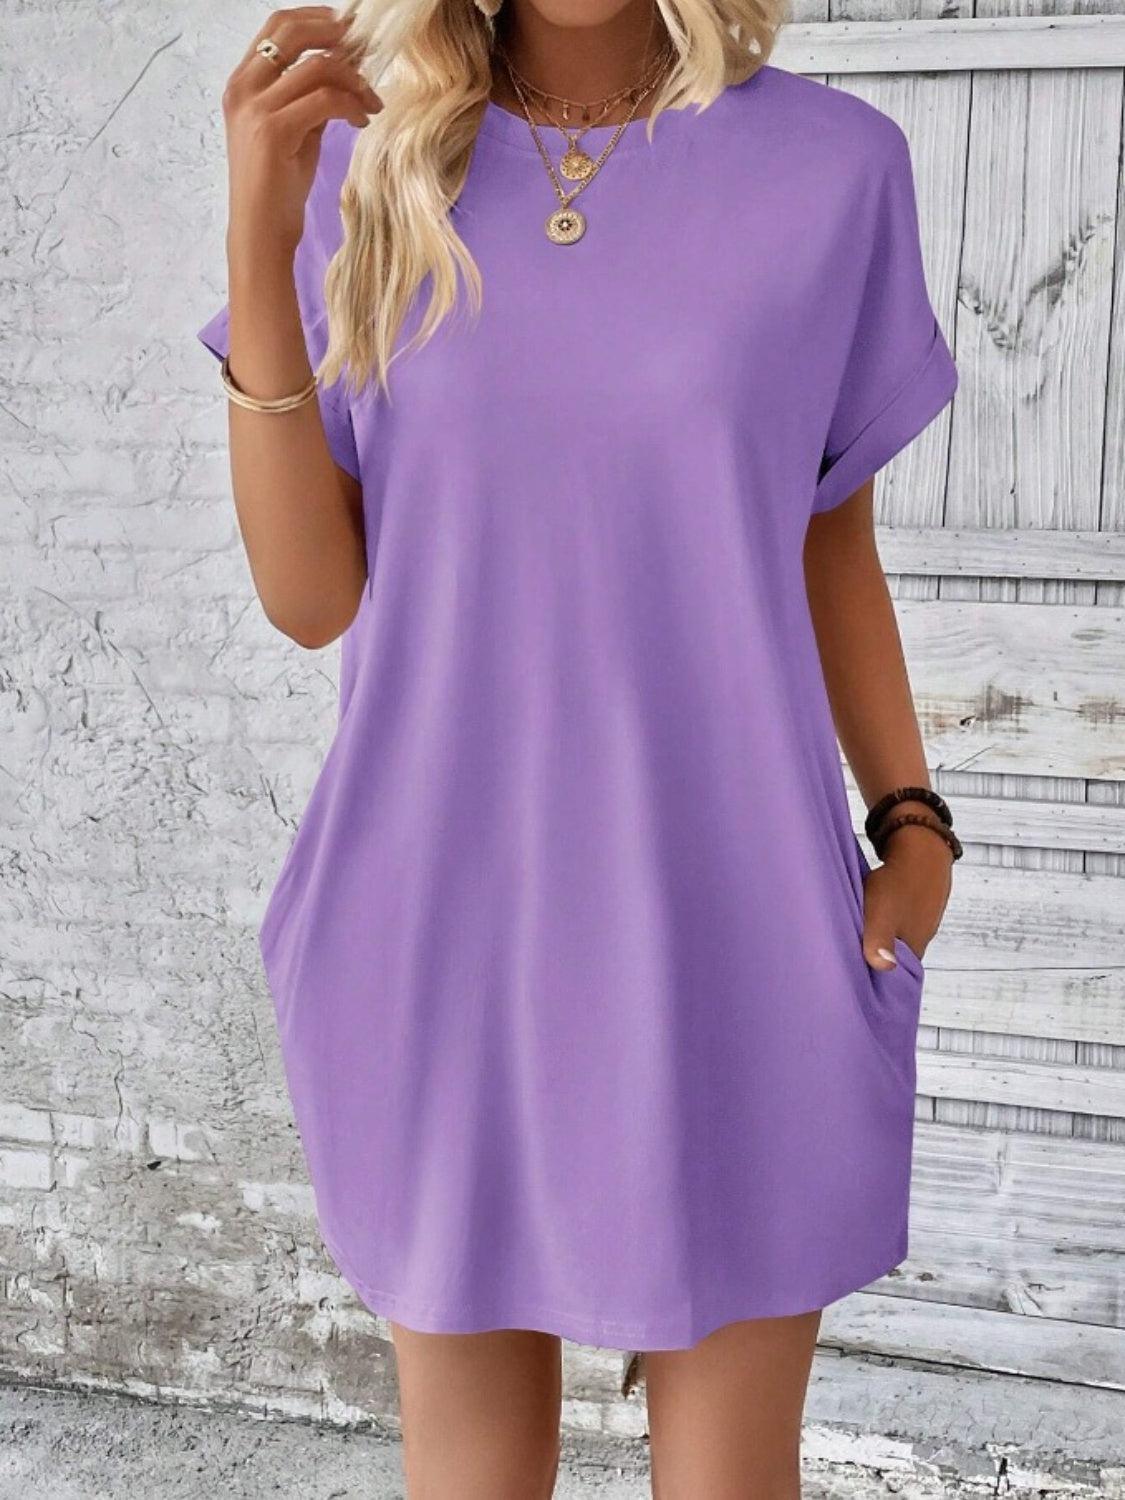 a woman wearing a purple shirt dress